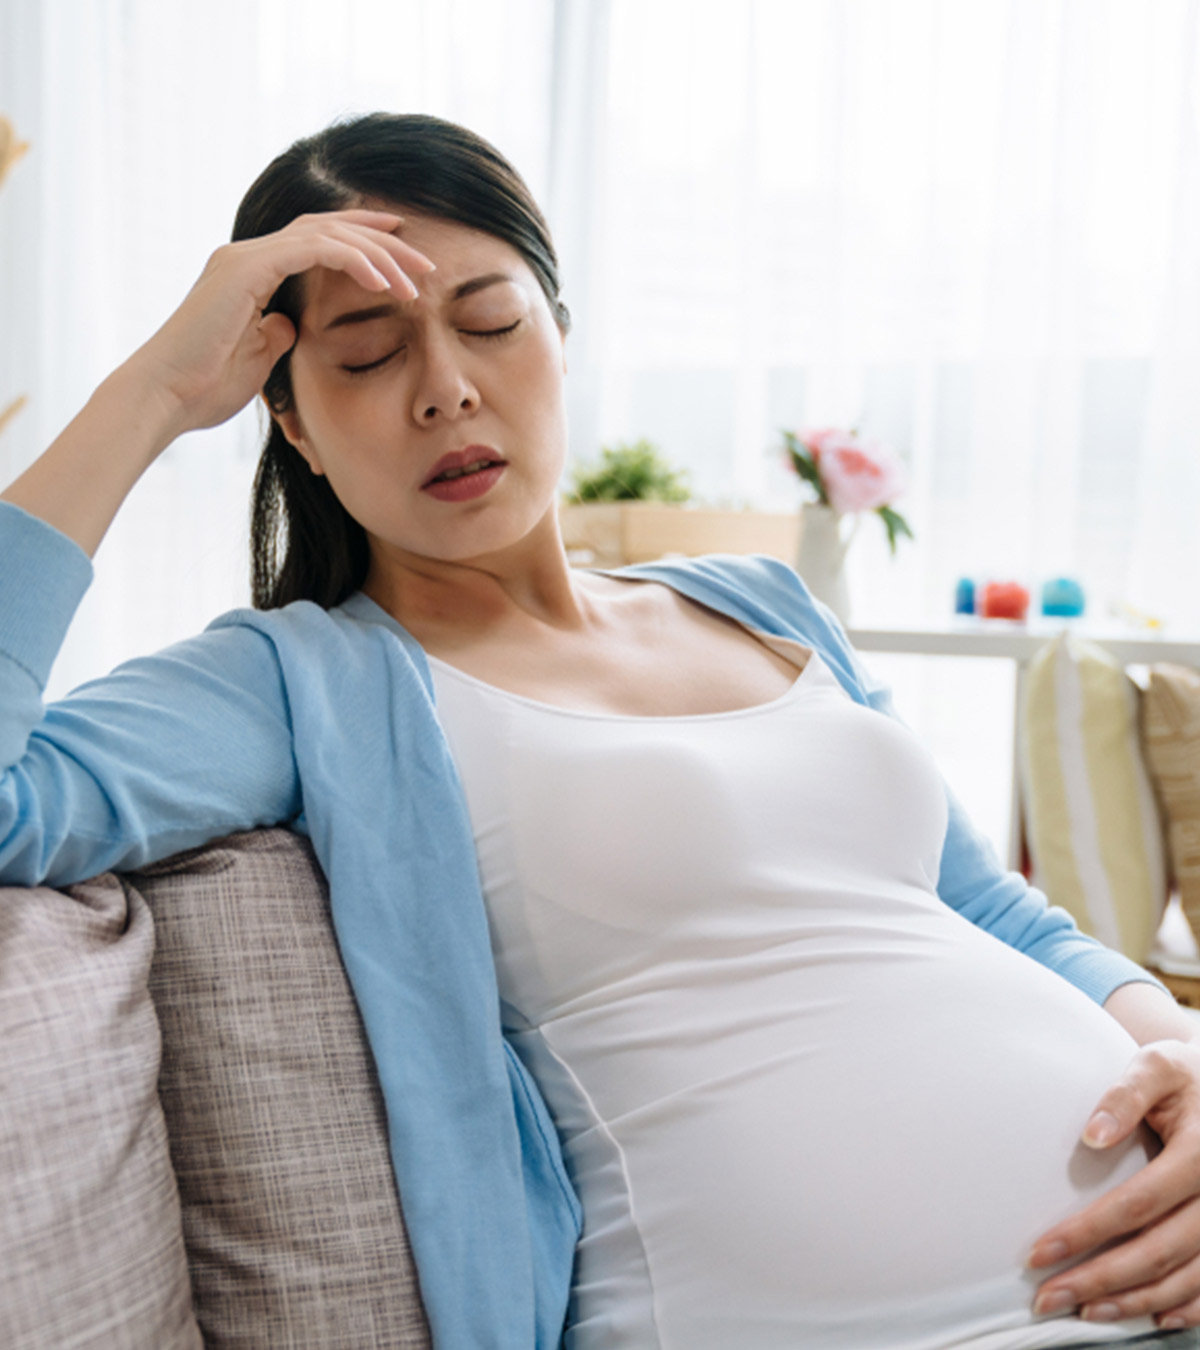 प्रेगनेंसी में चक्कर आने के 6 कारण व उपाय | Pregnancy Me Chakkar Aana